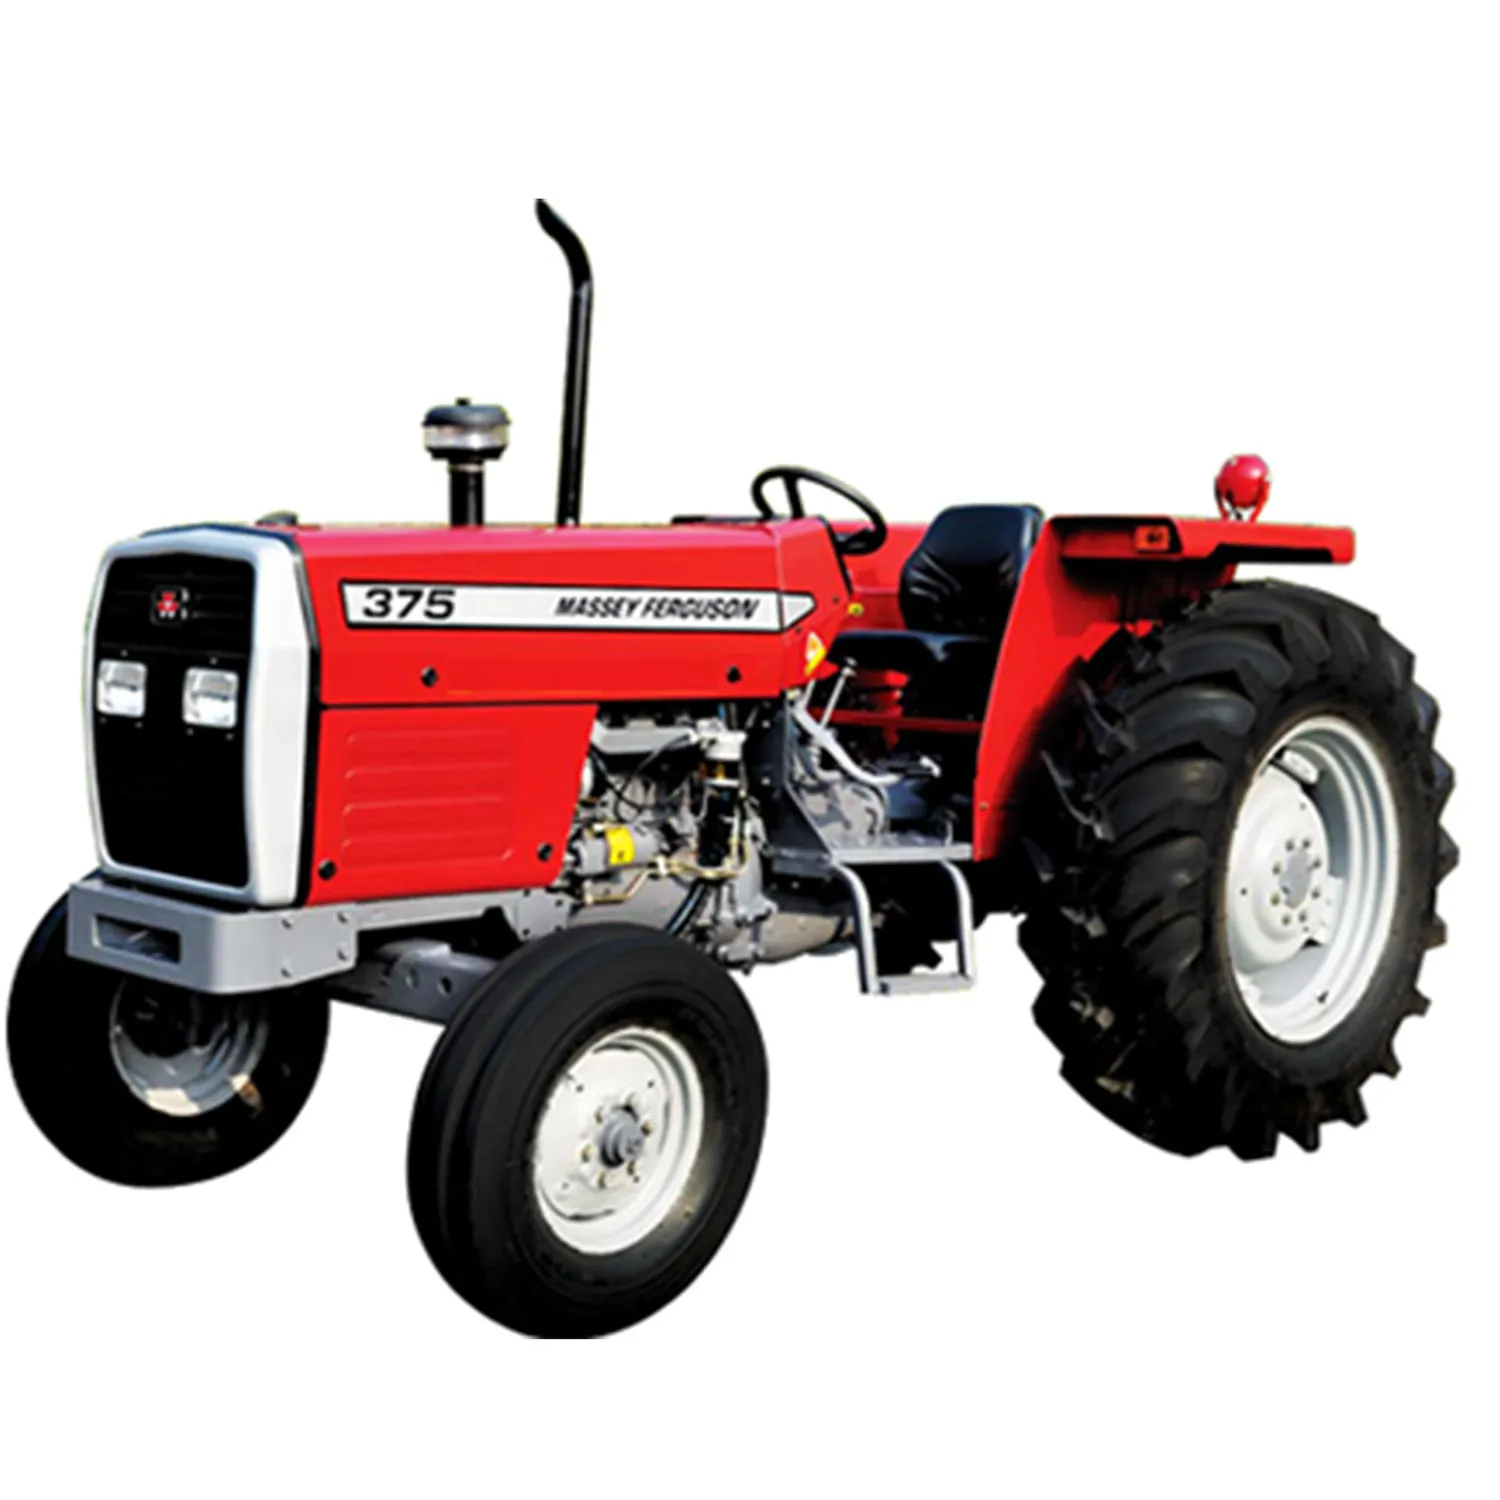 Ucuz kullanılan Massey Ferguson traktör 385 MF 290 MF 399 ve MF 455 ekstra tarım makinesi çiftlik